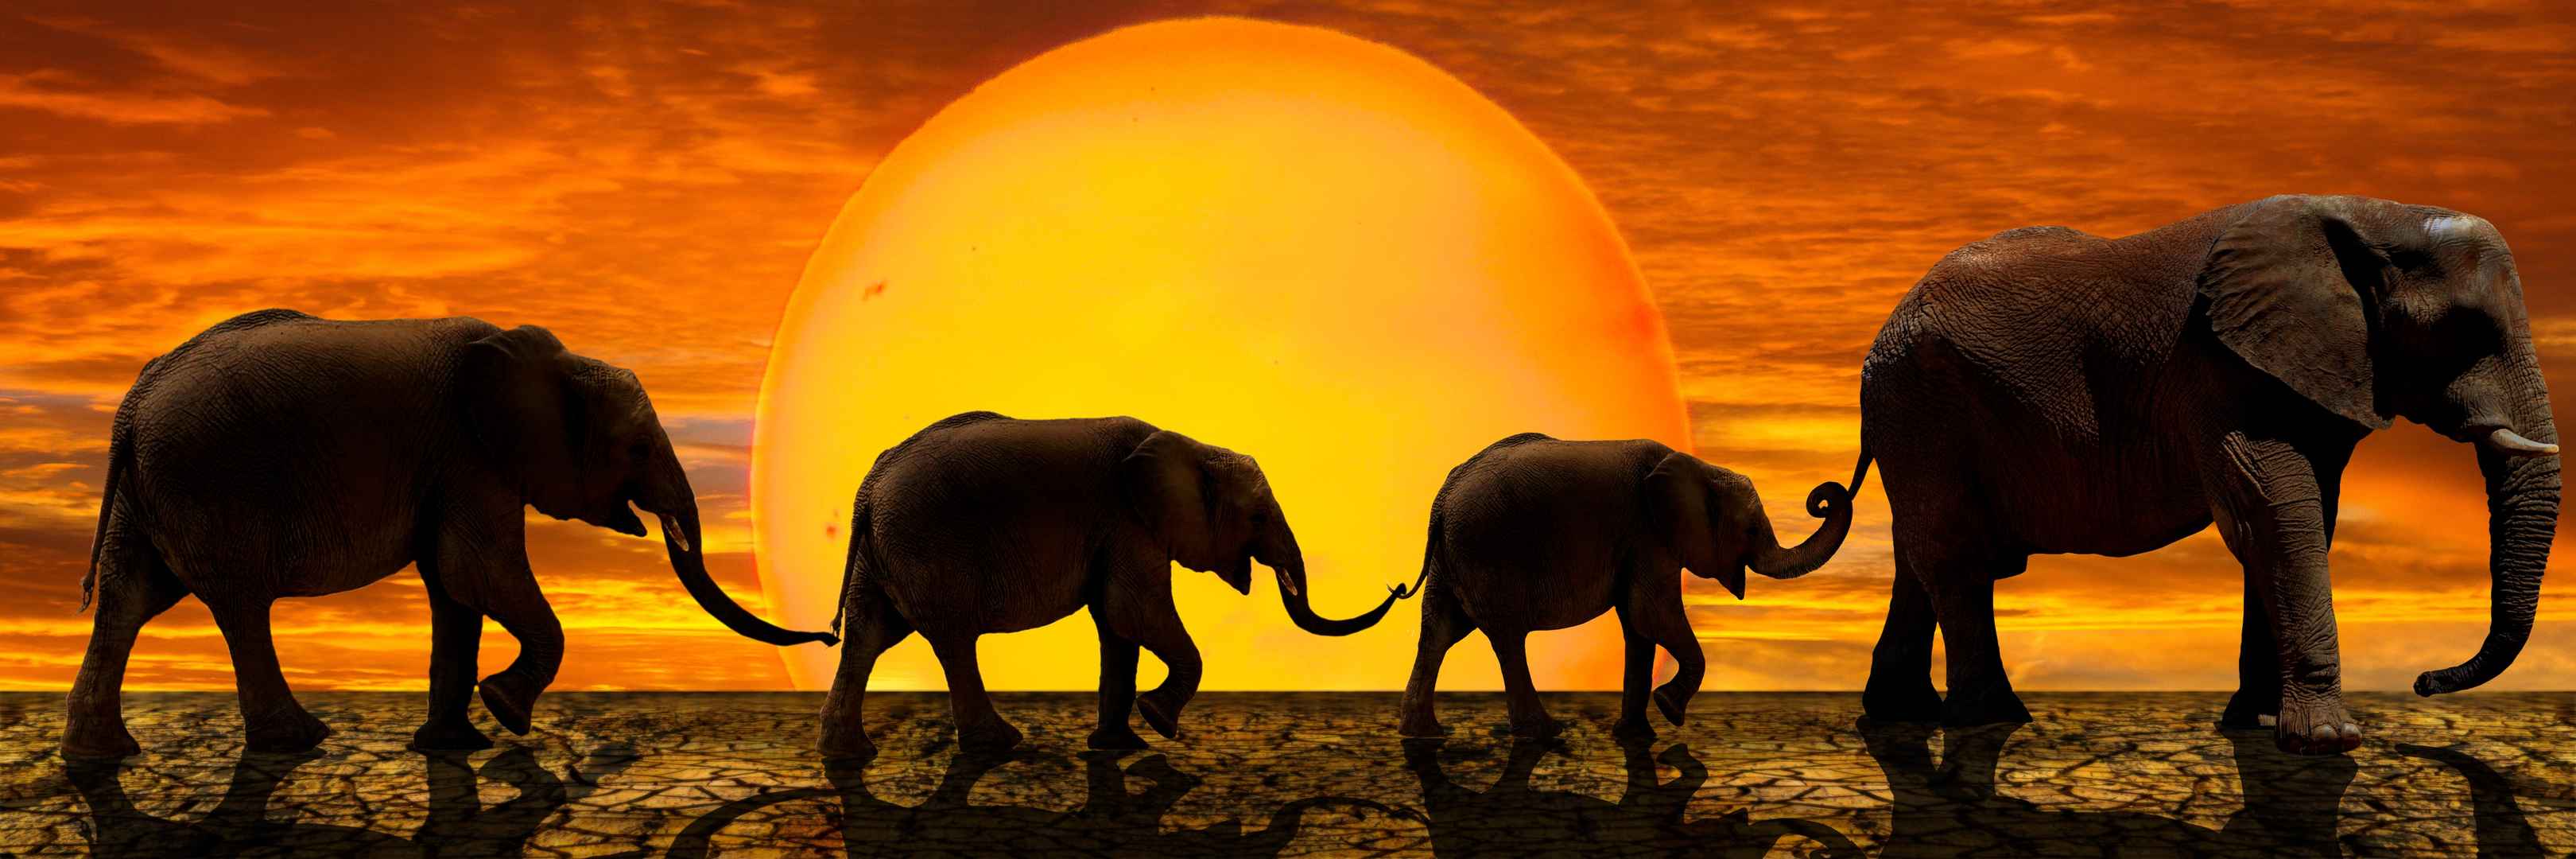 日落下大象群迁徙图片壁纸